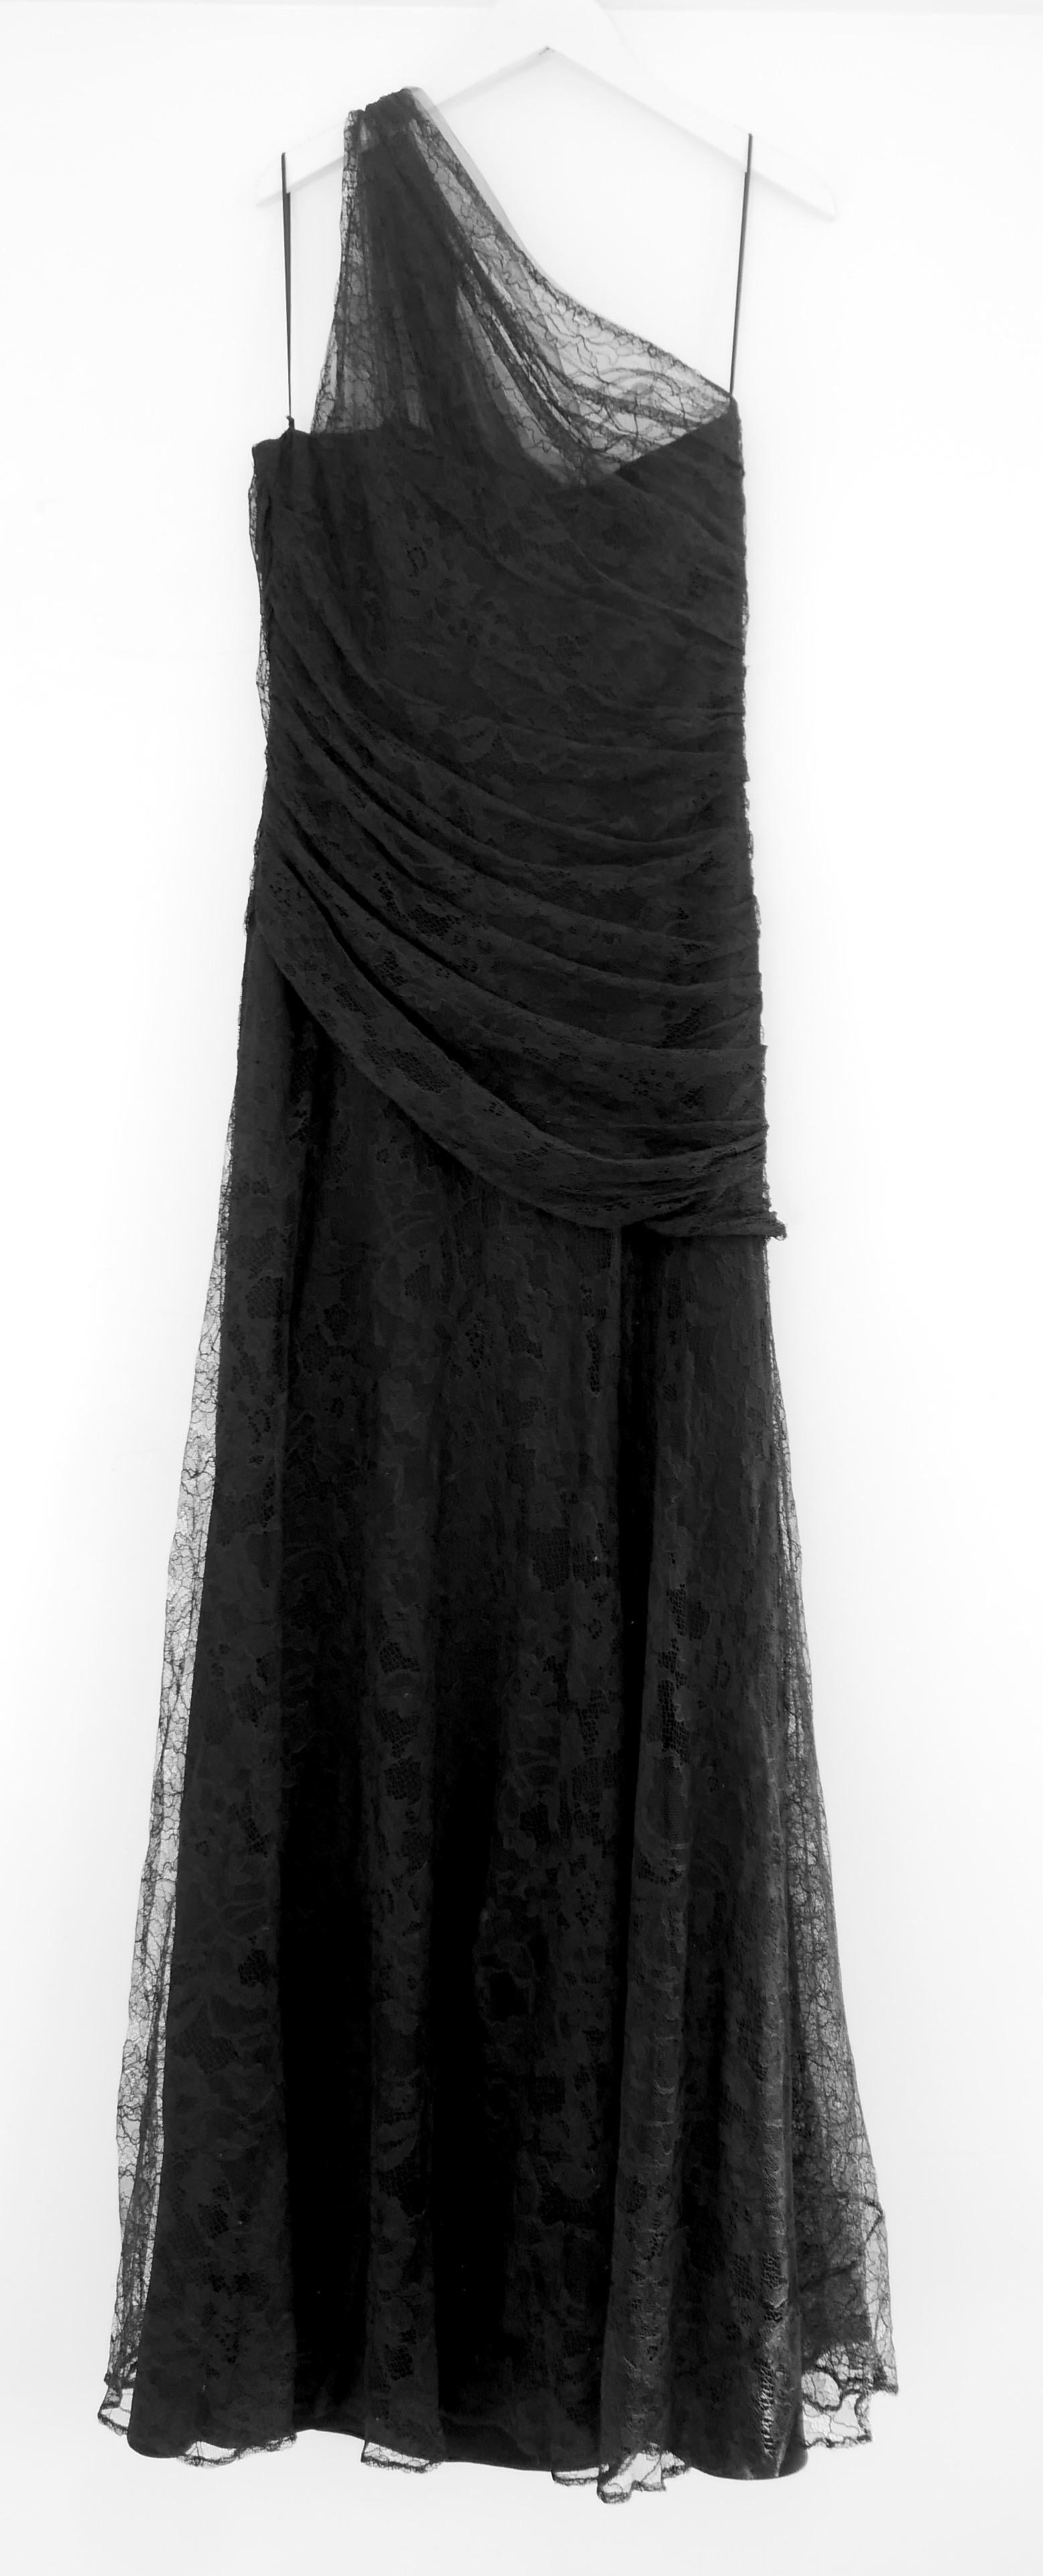 Gotisches, wunderschönes Roberto Cavalli Kleid mit einer Schulter aus Spitze. Gekauft für £2540 und neu mit Etiketten, Kleiderbügel und Staubbeutel. Es ist aus superfeiner, zarter, leicht glitzernder schwarzer Spitze gefertigt, hat ein sehr